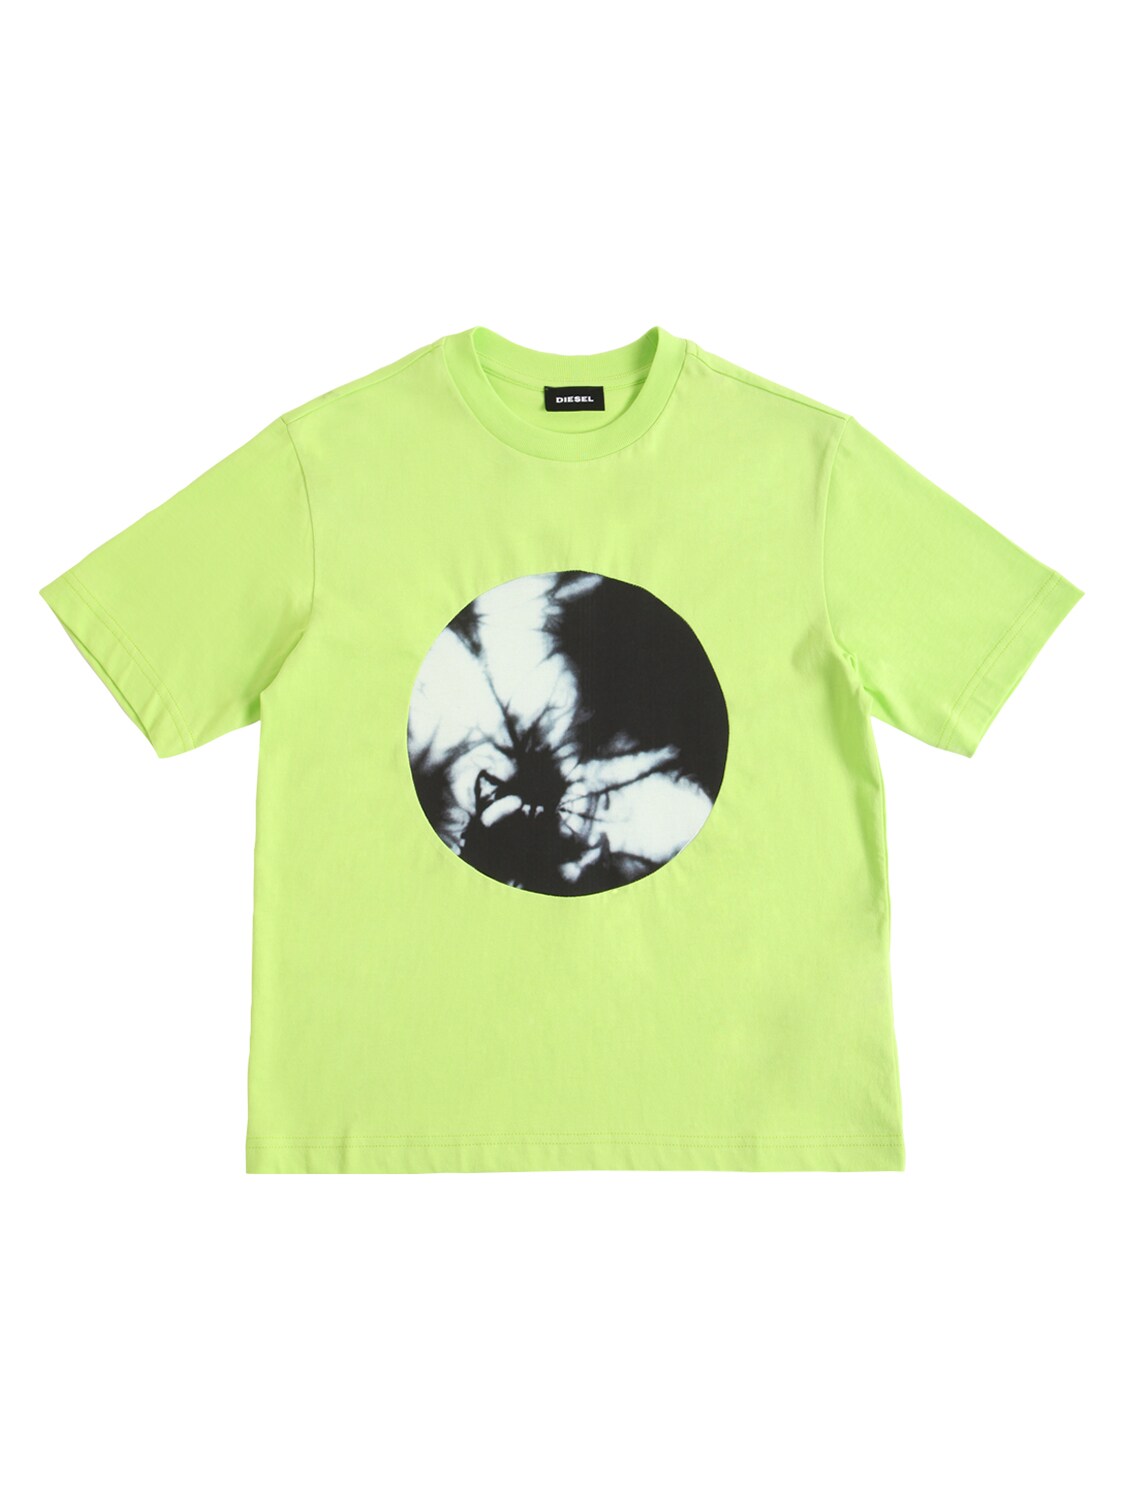 Diesel Kids' Tie Dye Patch Cotton Jersey T-shirt In Neon Green